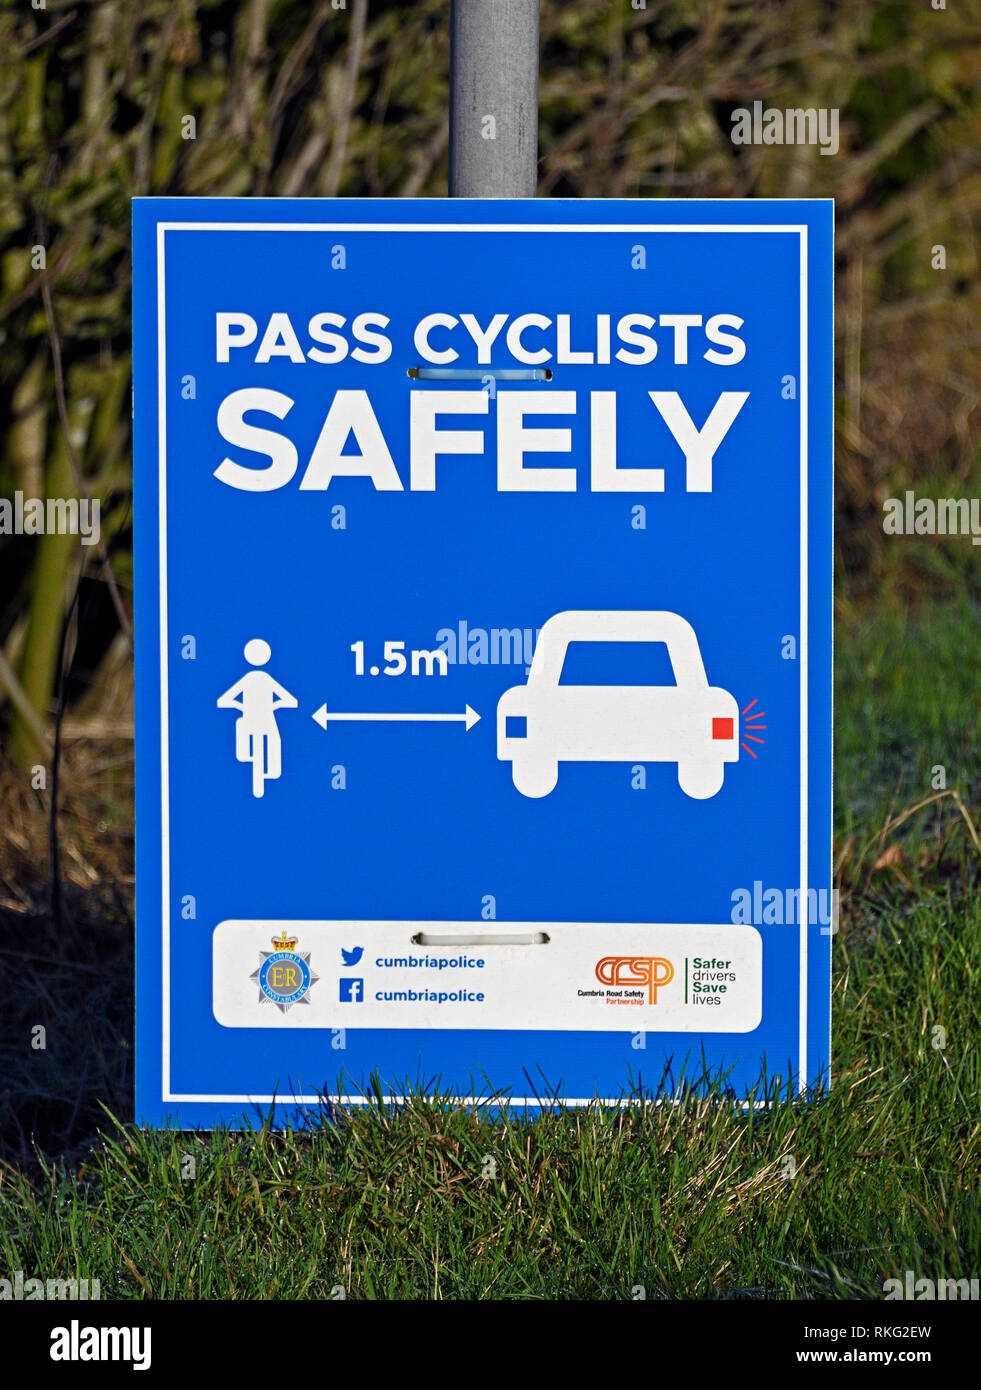 Avis de sécurité routière de la Police de Cumbria. Les cyclistes 'PASS' EN TOUTE SÉCURITÉ. Hayclose Lane, Kendal, Cumbria, Angleterre, Royaume-Uni, Europe. Banque D'Images